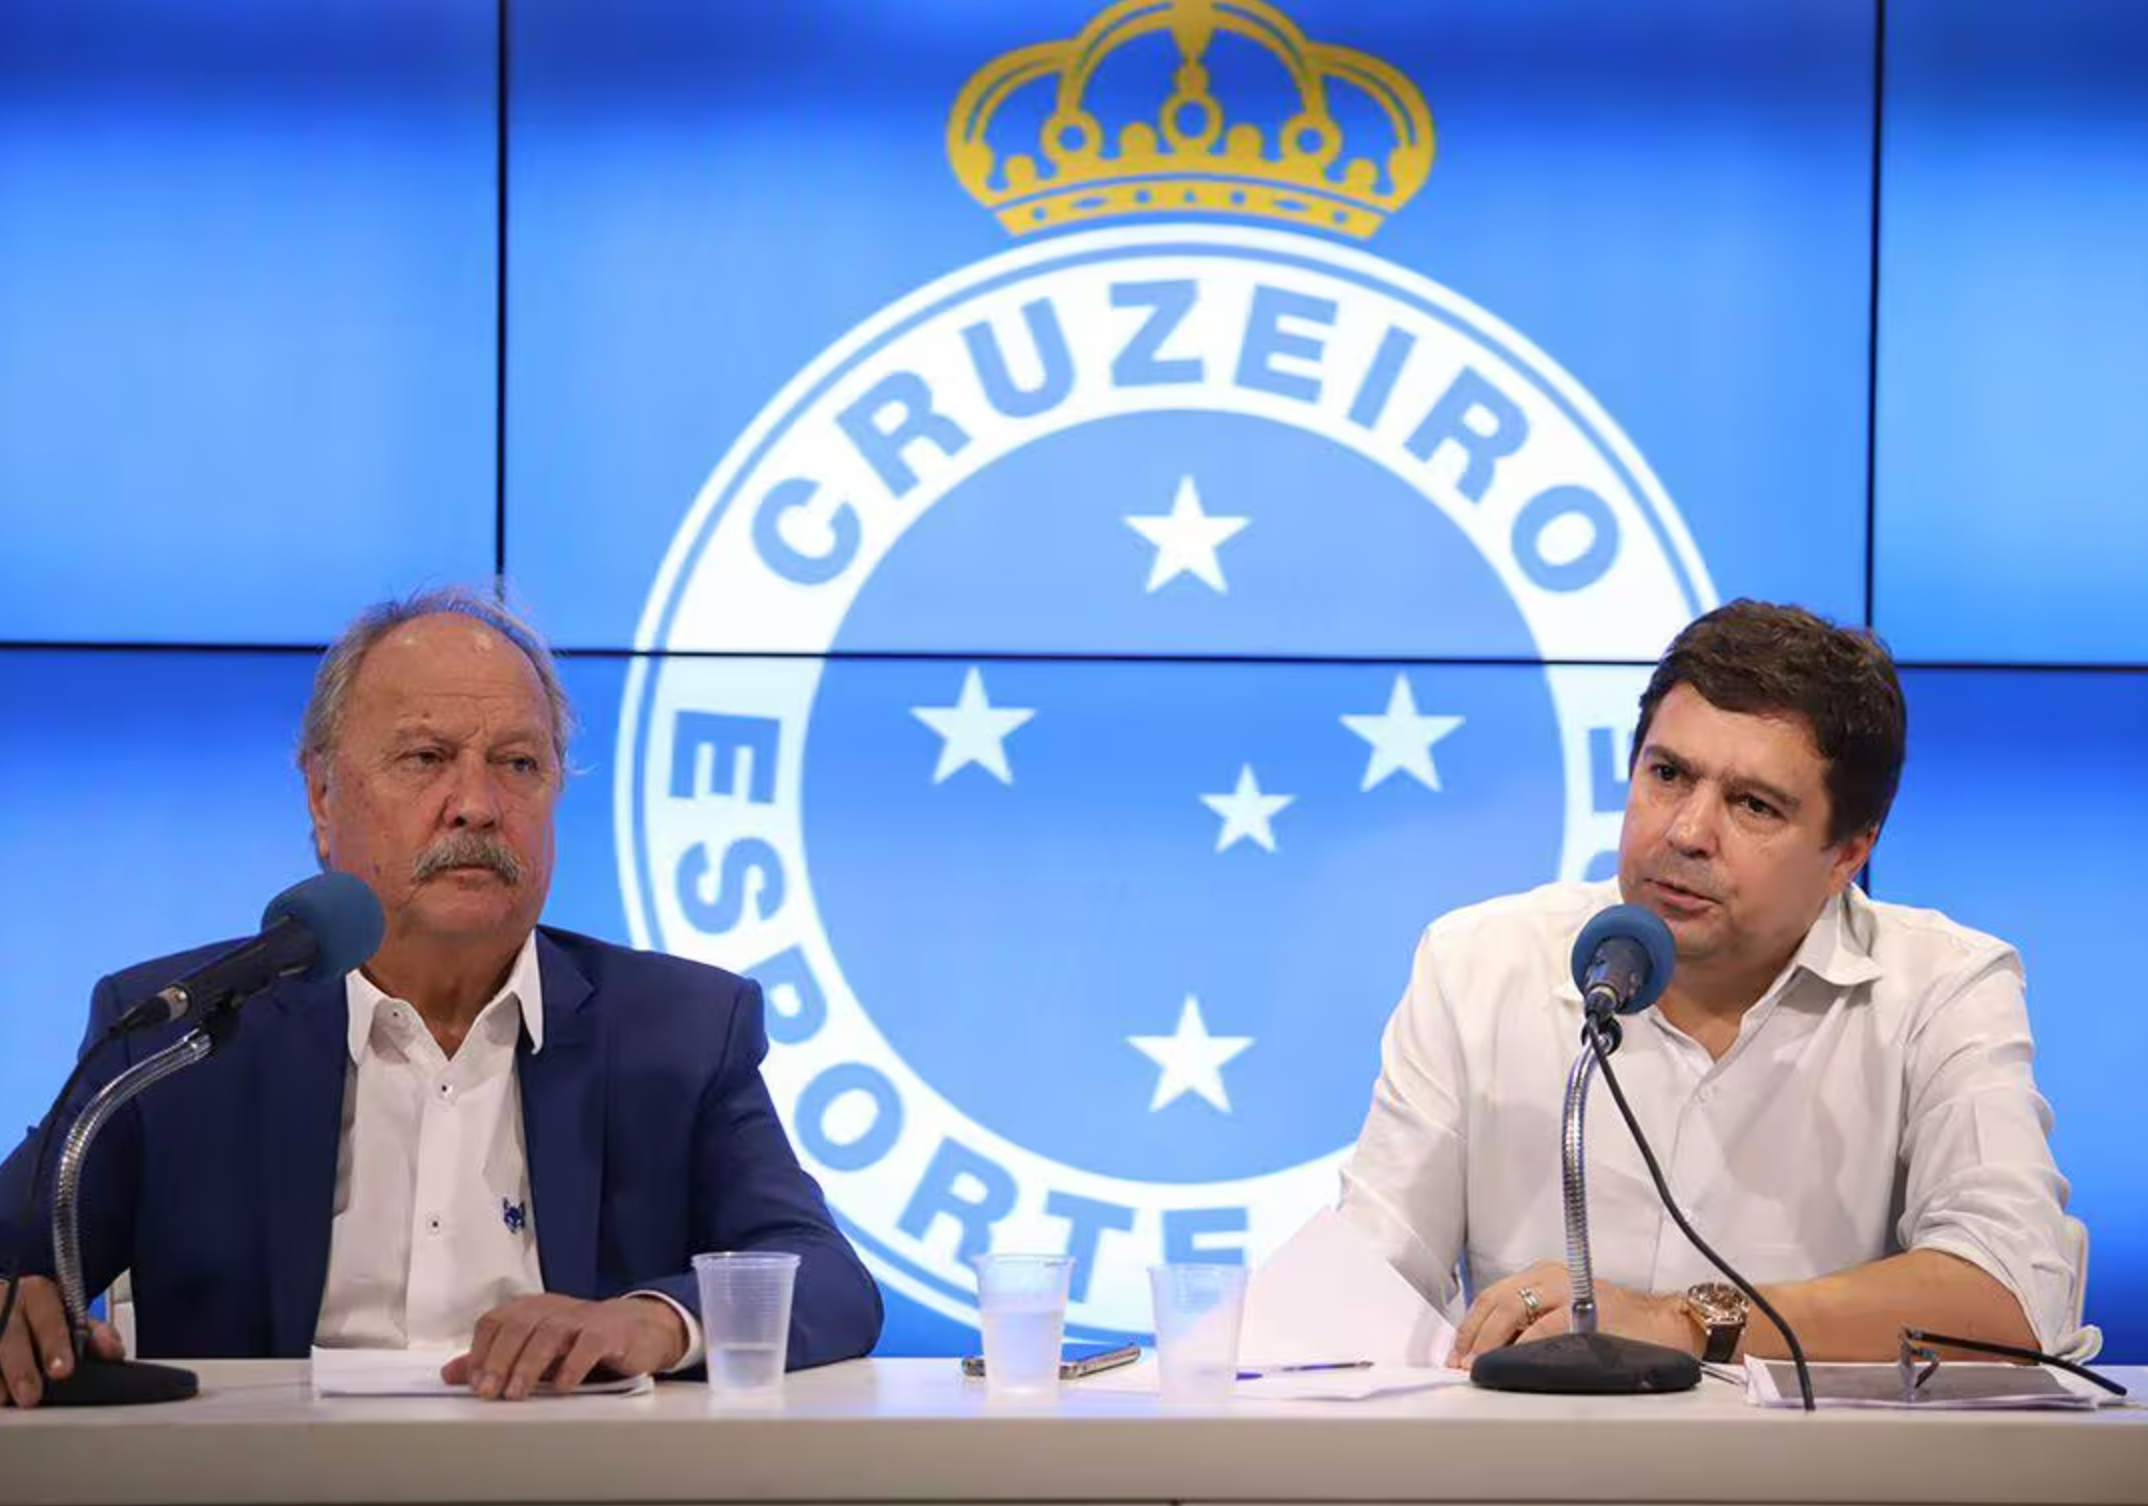 Wagner Pires de Sá e Itair Machado, ex-dirigentes do Cruzeiro Esporte Clube